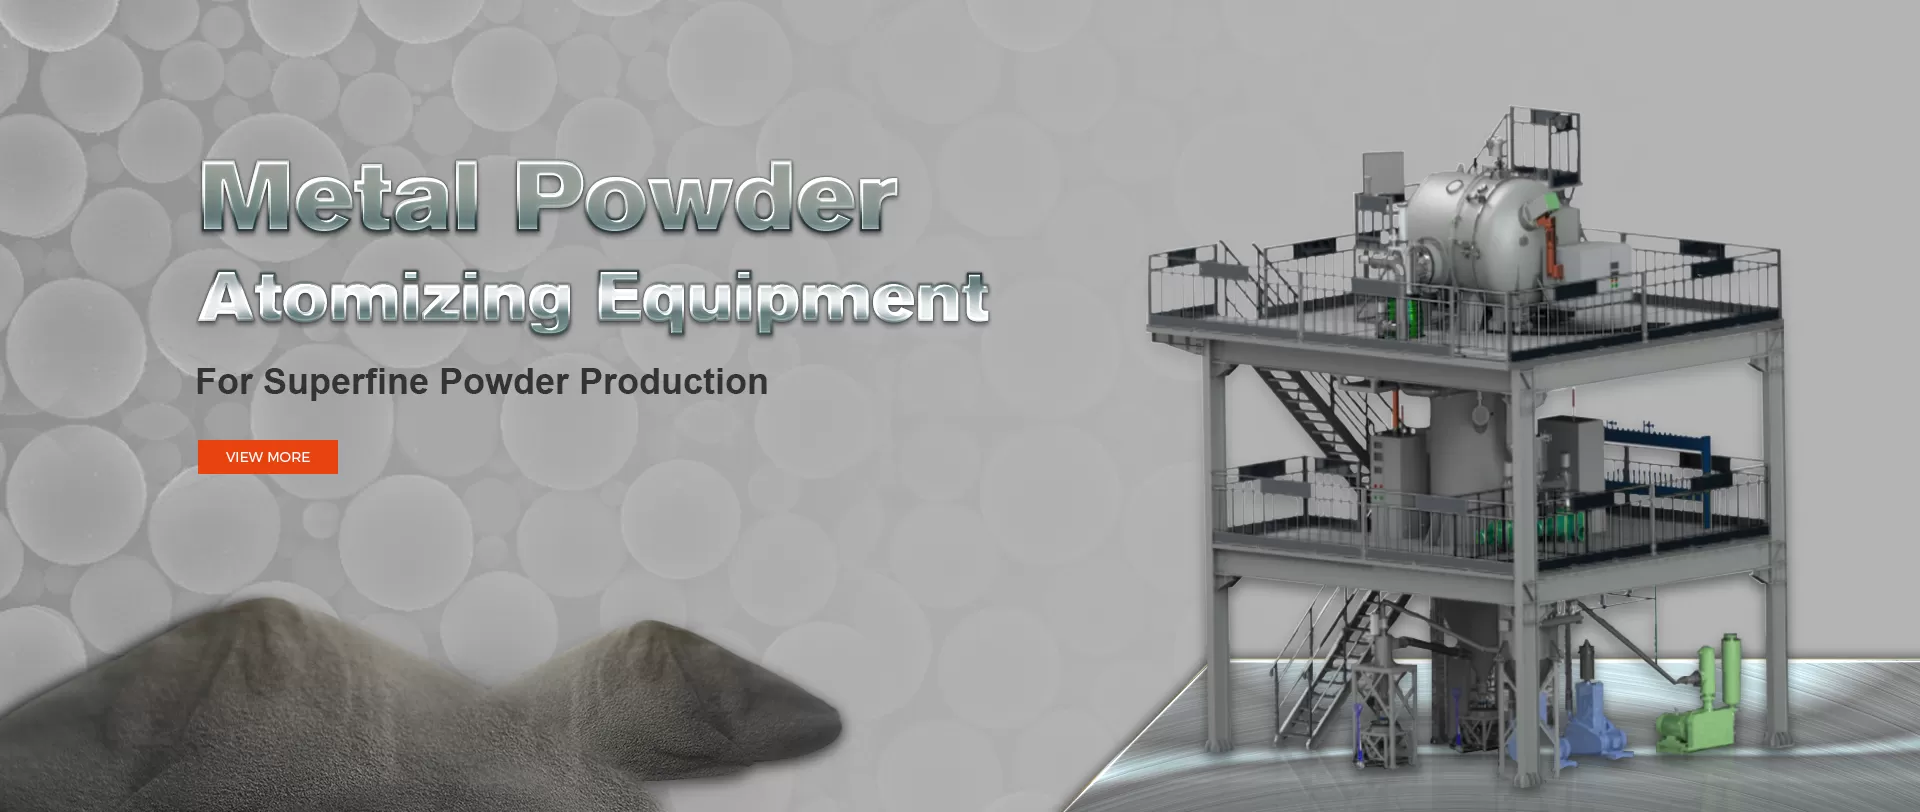 Metal Powder Atomizing Equipment